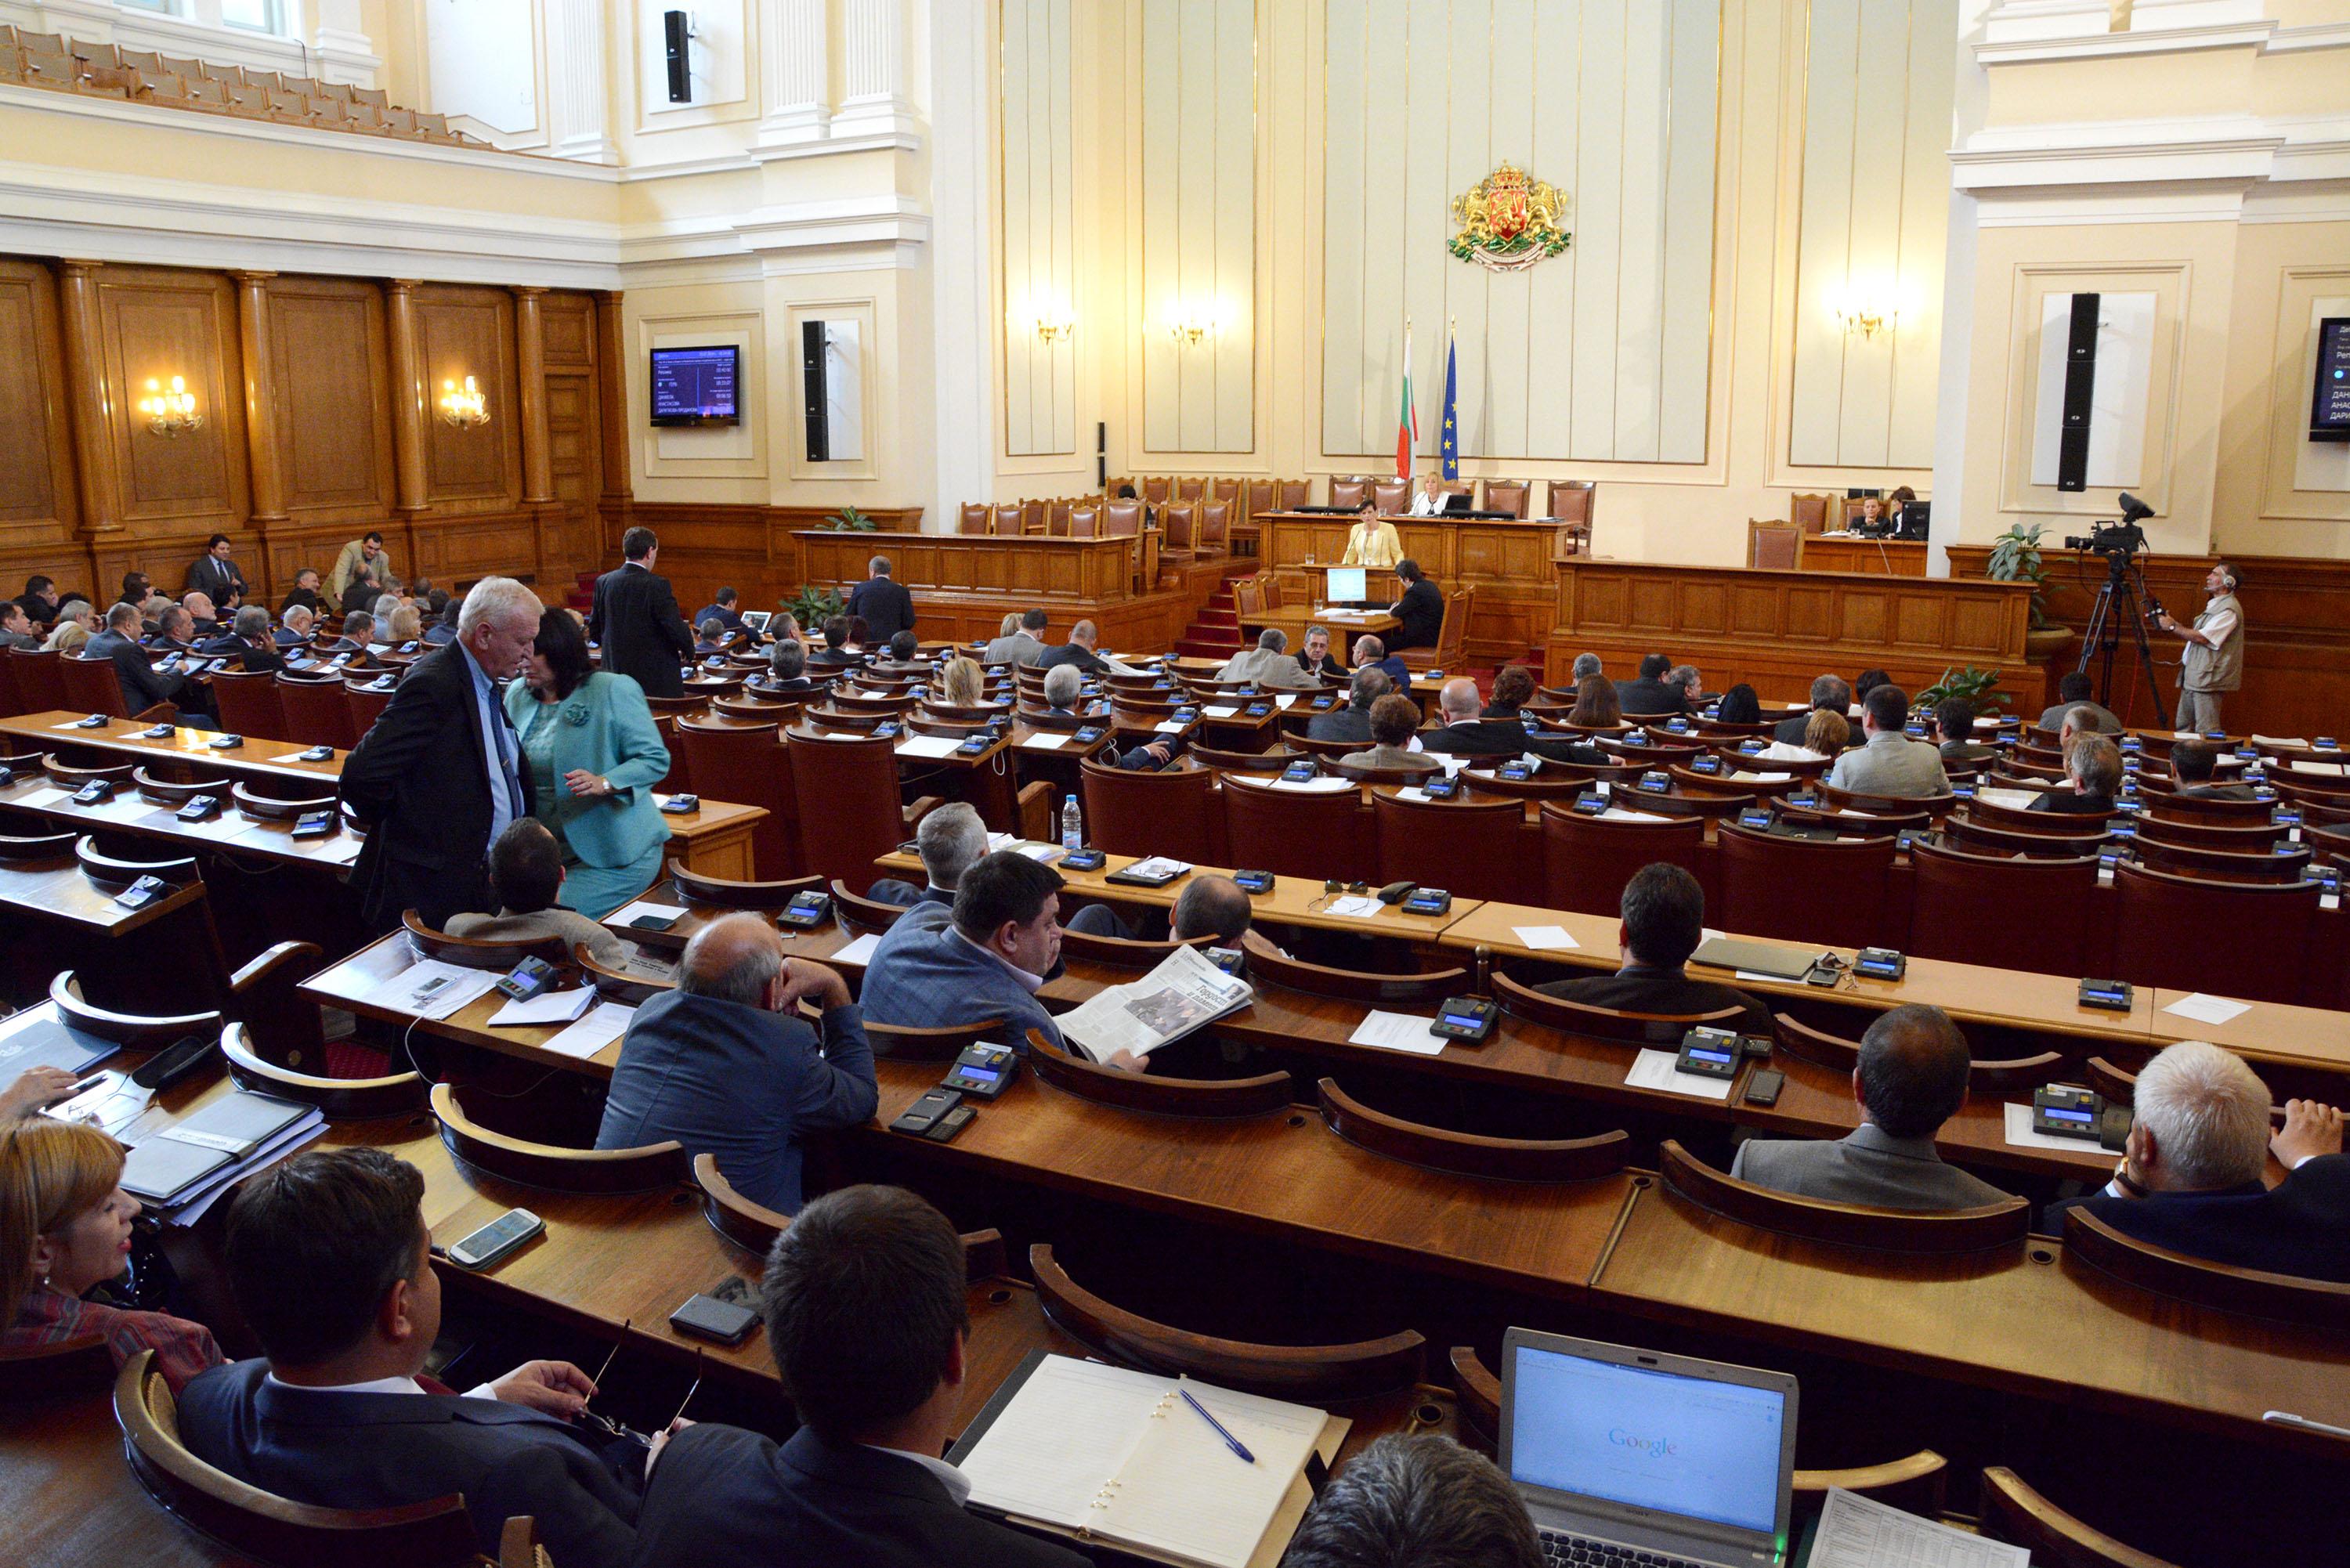 121 дебютанти влизат в новия парламент, Ташева тъгува отвън